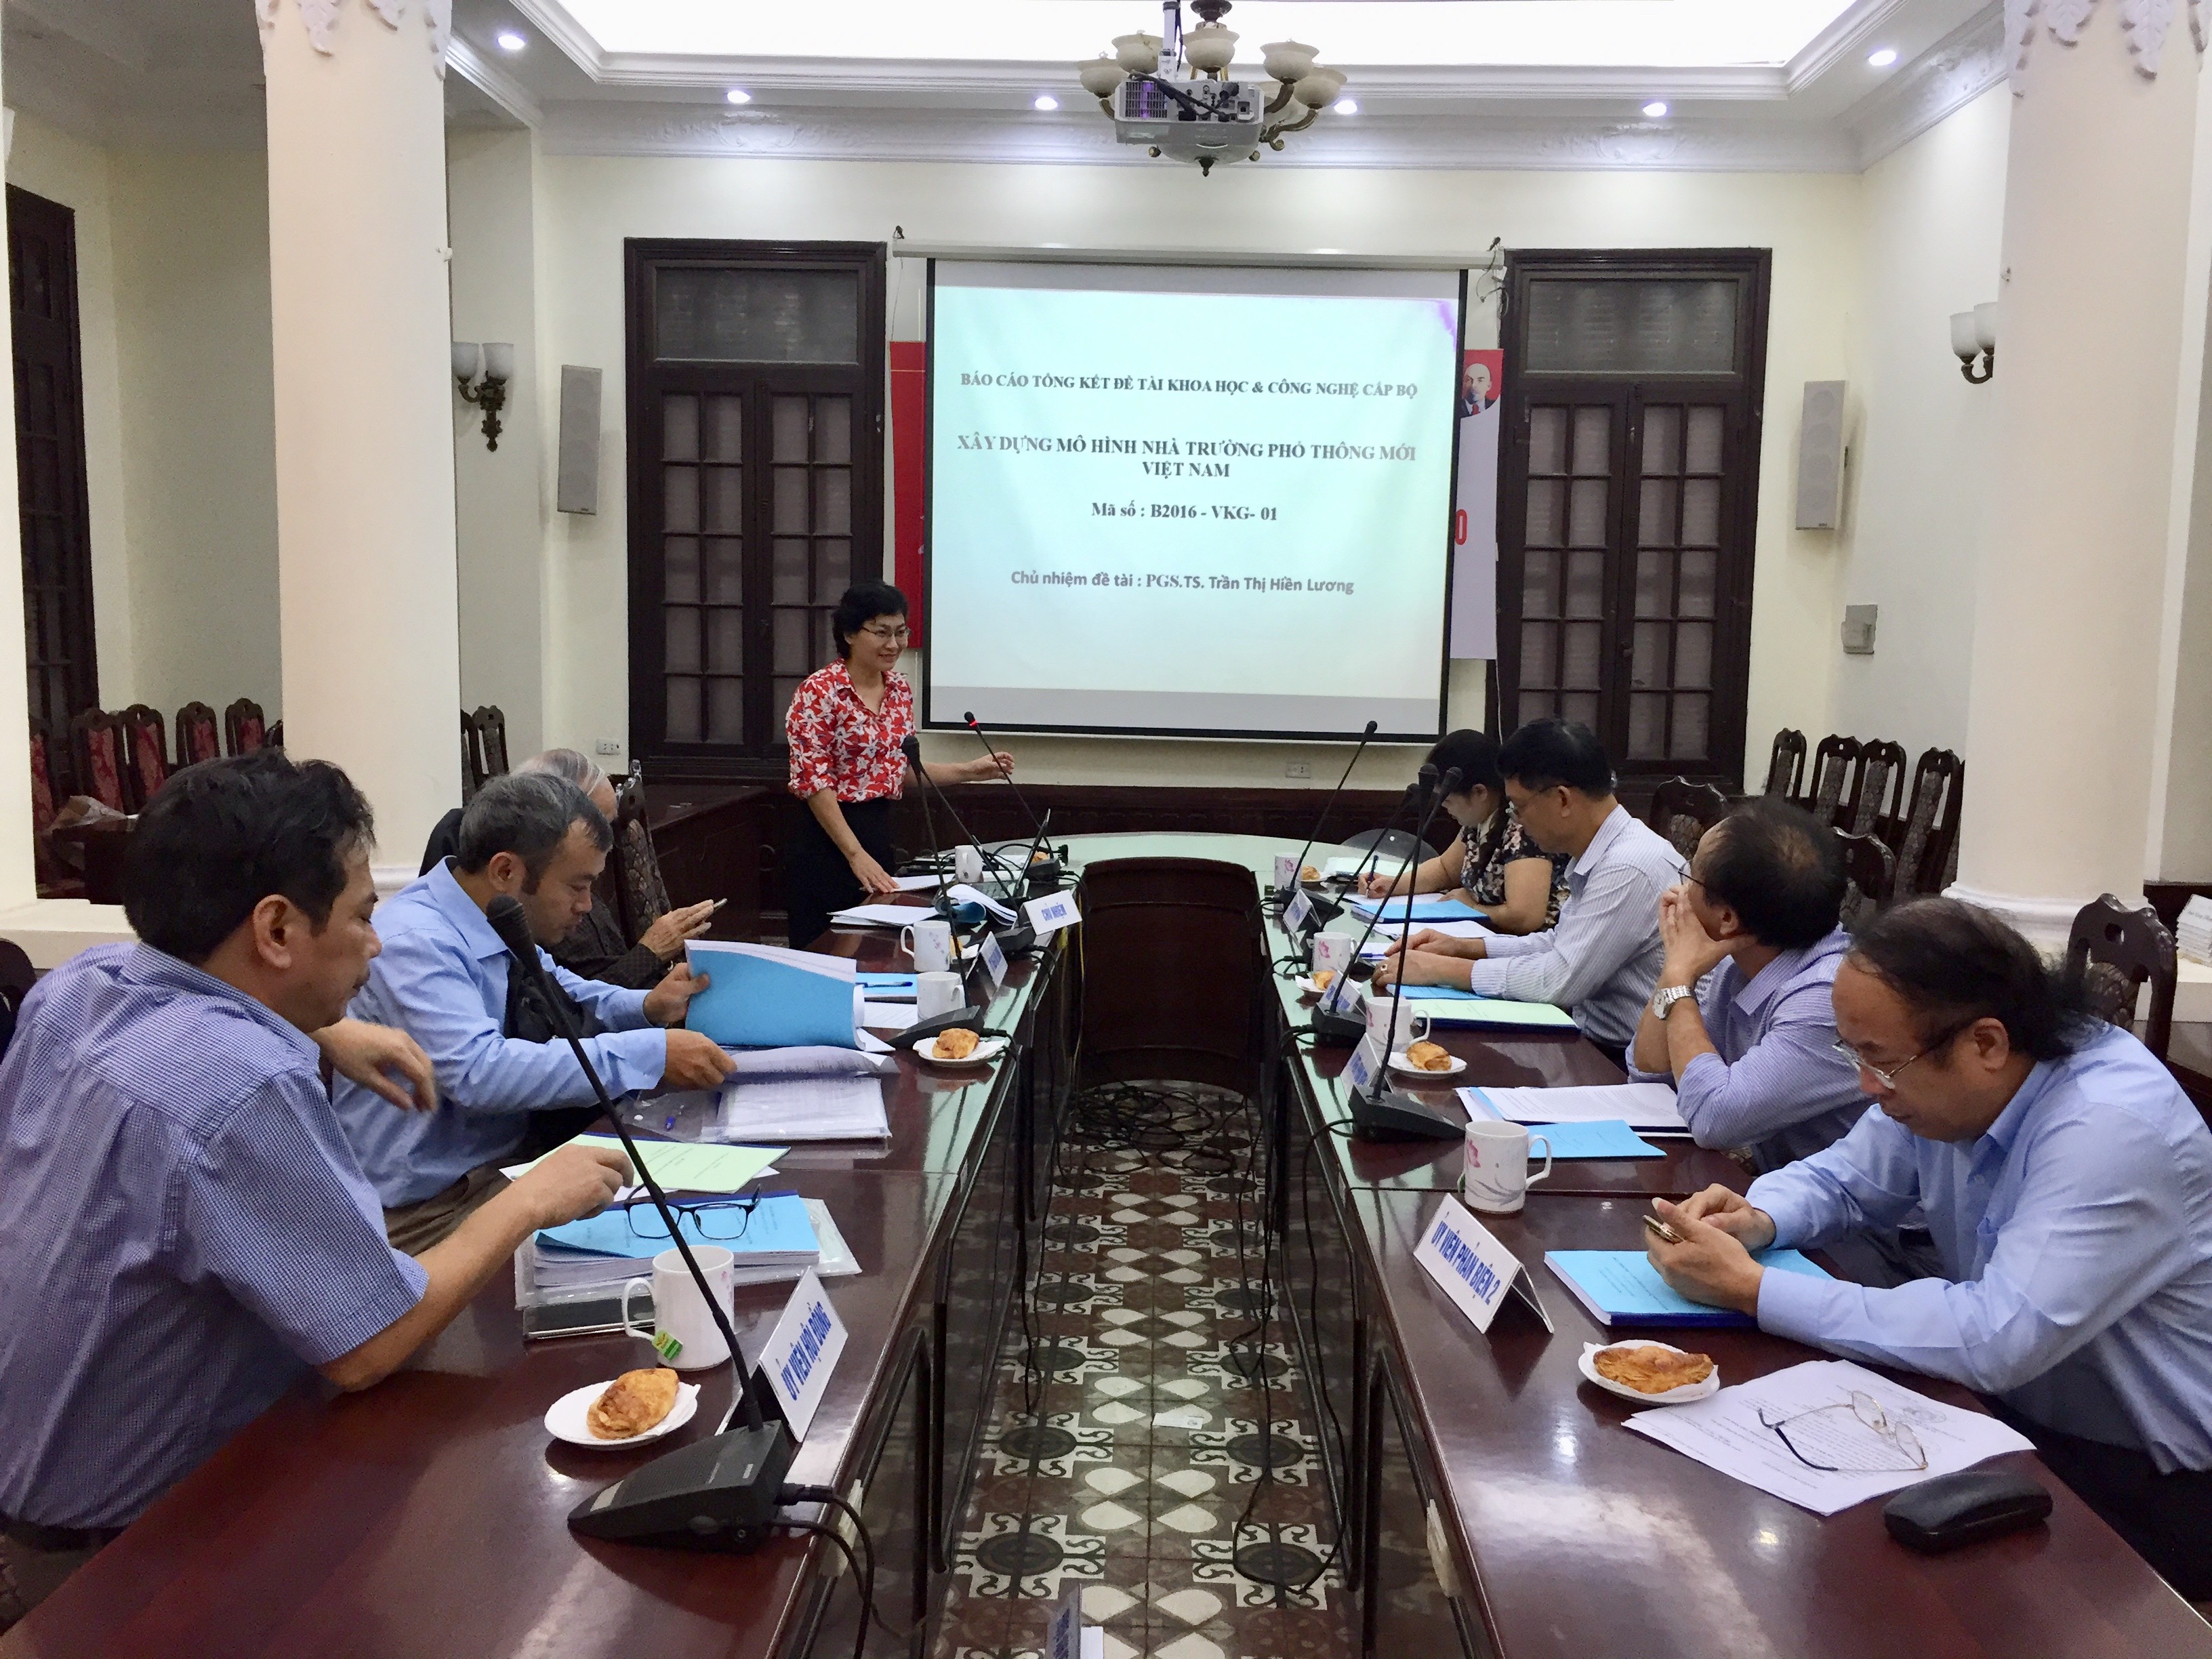 Nghiệm thu đề tài khoa học và công nghệ cấp bộ “Xây dựng mô hình nhà trường phổ thông mới Việt Nam”